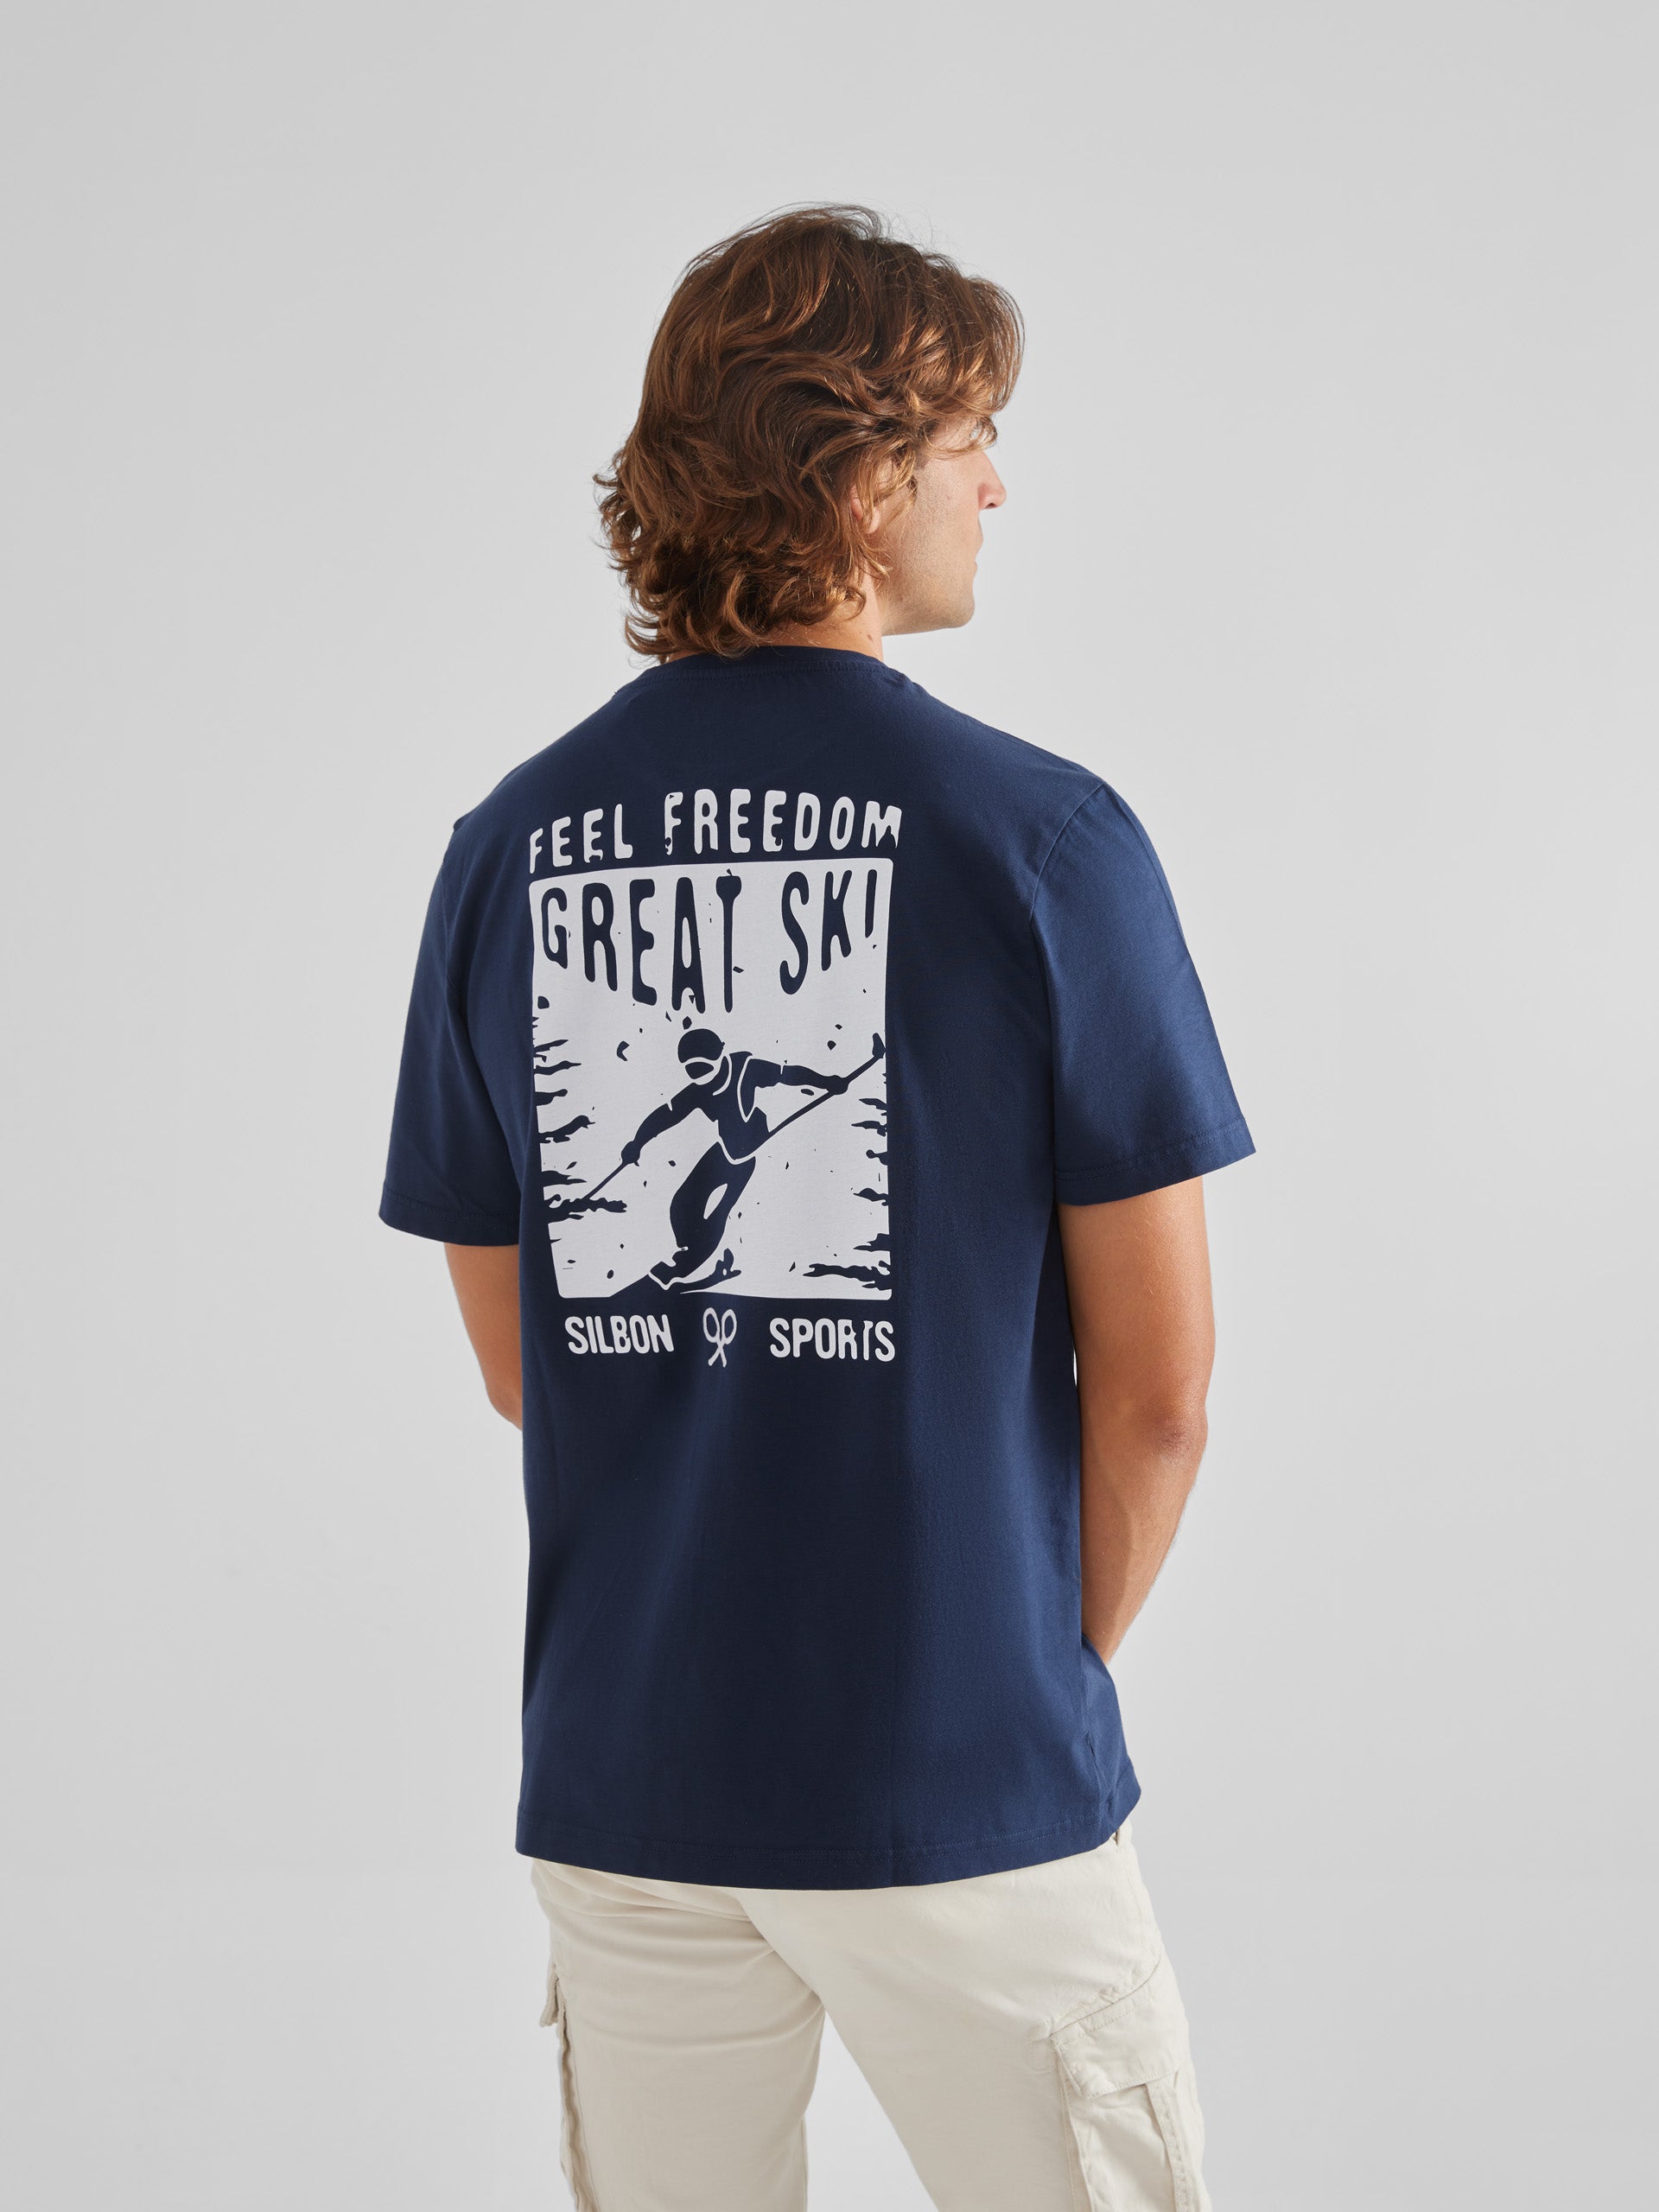 T-shirt grand ski bleu marine